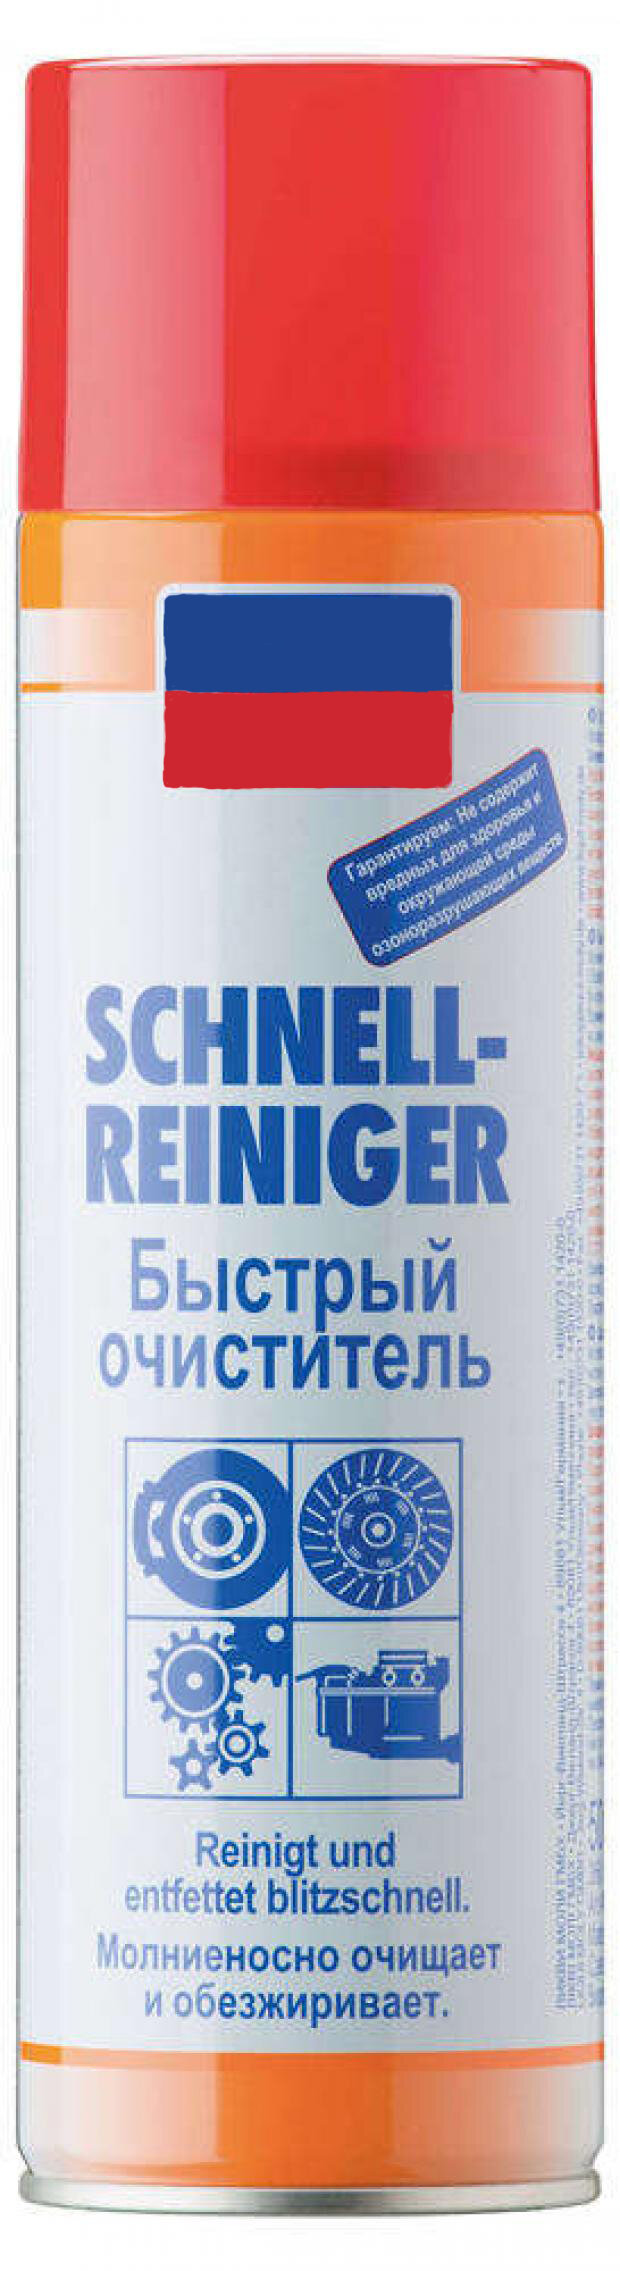 Очиститель Schnell-Reiniger от загрязнений 500 мл